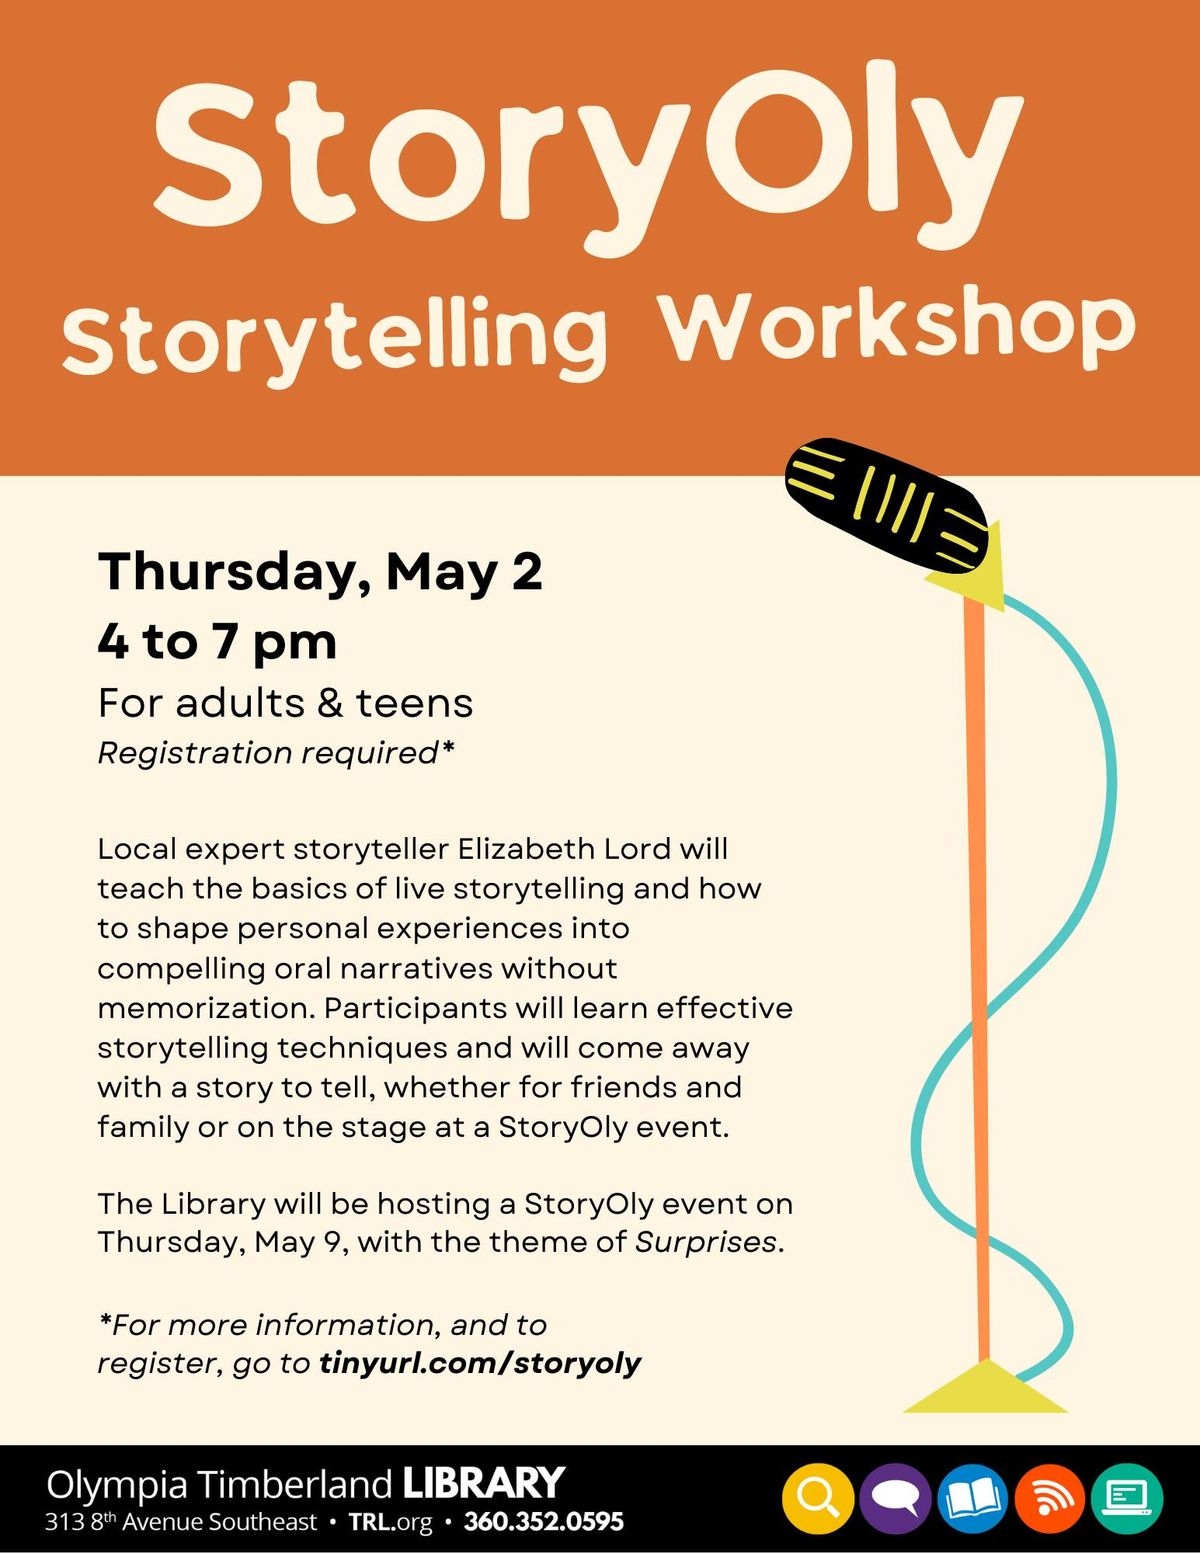 StoryOly Storytelling Workshop